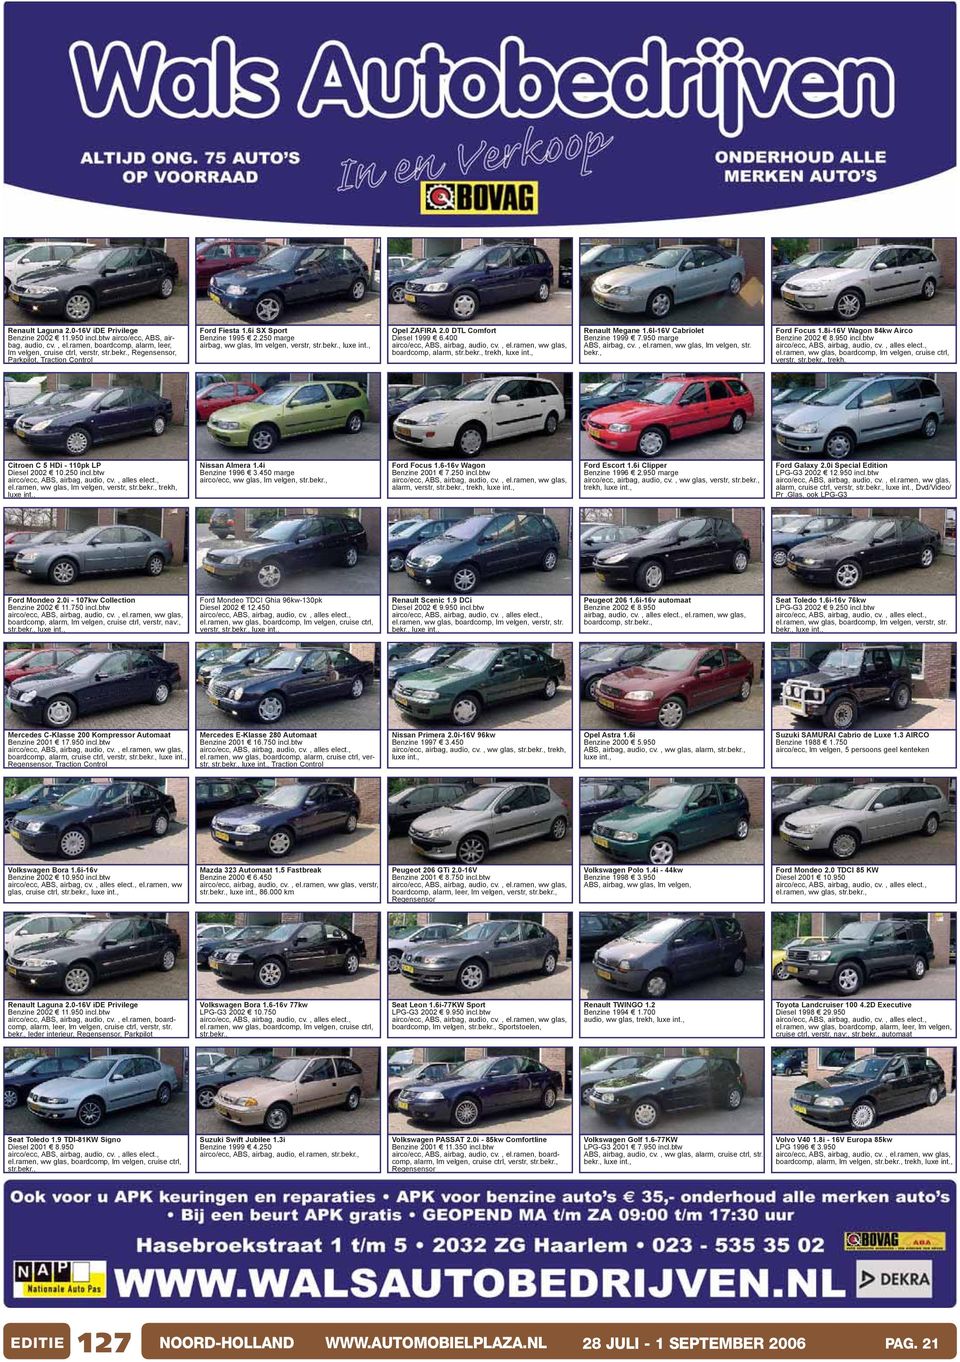 400 boardcomp, alarm, str.bekr., trekh, luxe int., Renault Megane 1.6I-16V Cabriolet Benzine 1999 7.950 marge ABS, airbag, cv., el.ramen, ww glas, lm velgen, str. bekr., Ford Focus 1.